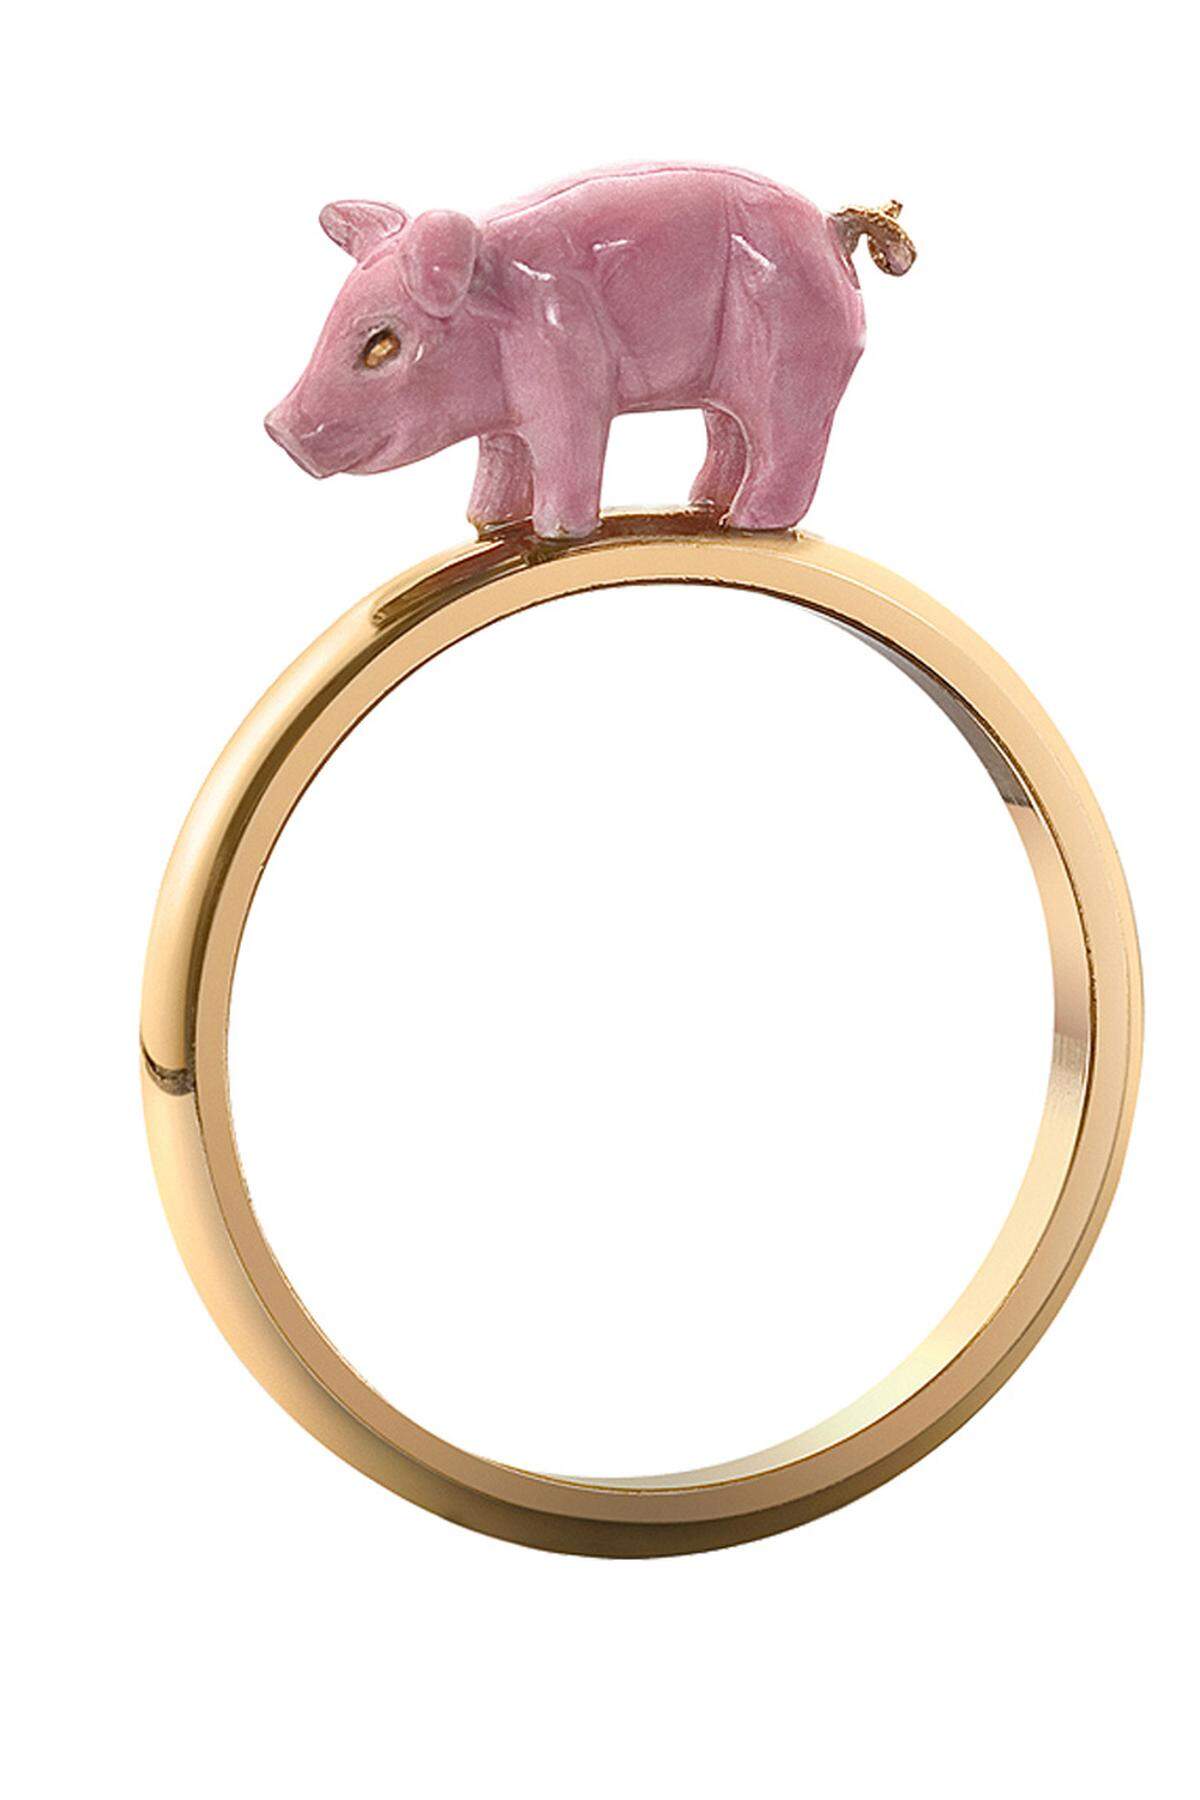 ... „Chinese Zodiac Pig“ von Solange Azagury-Partridge, Gelbgold und Email, 1450 Euro, solange.co.uk